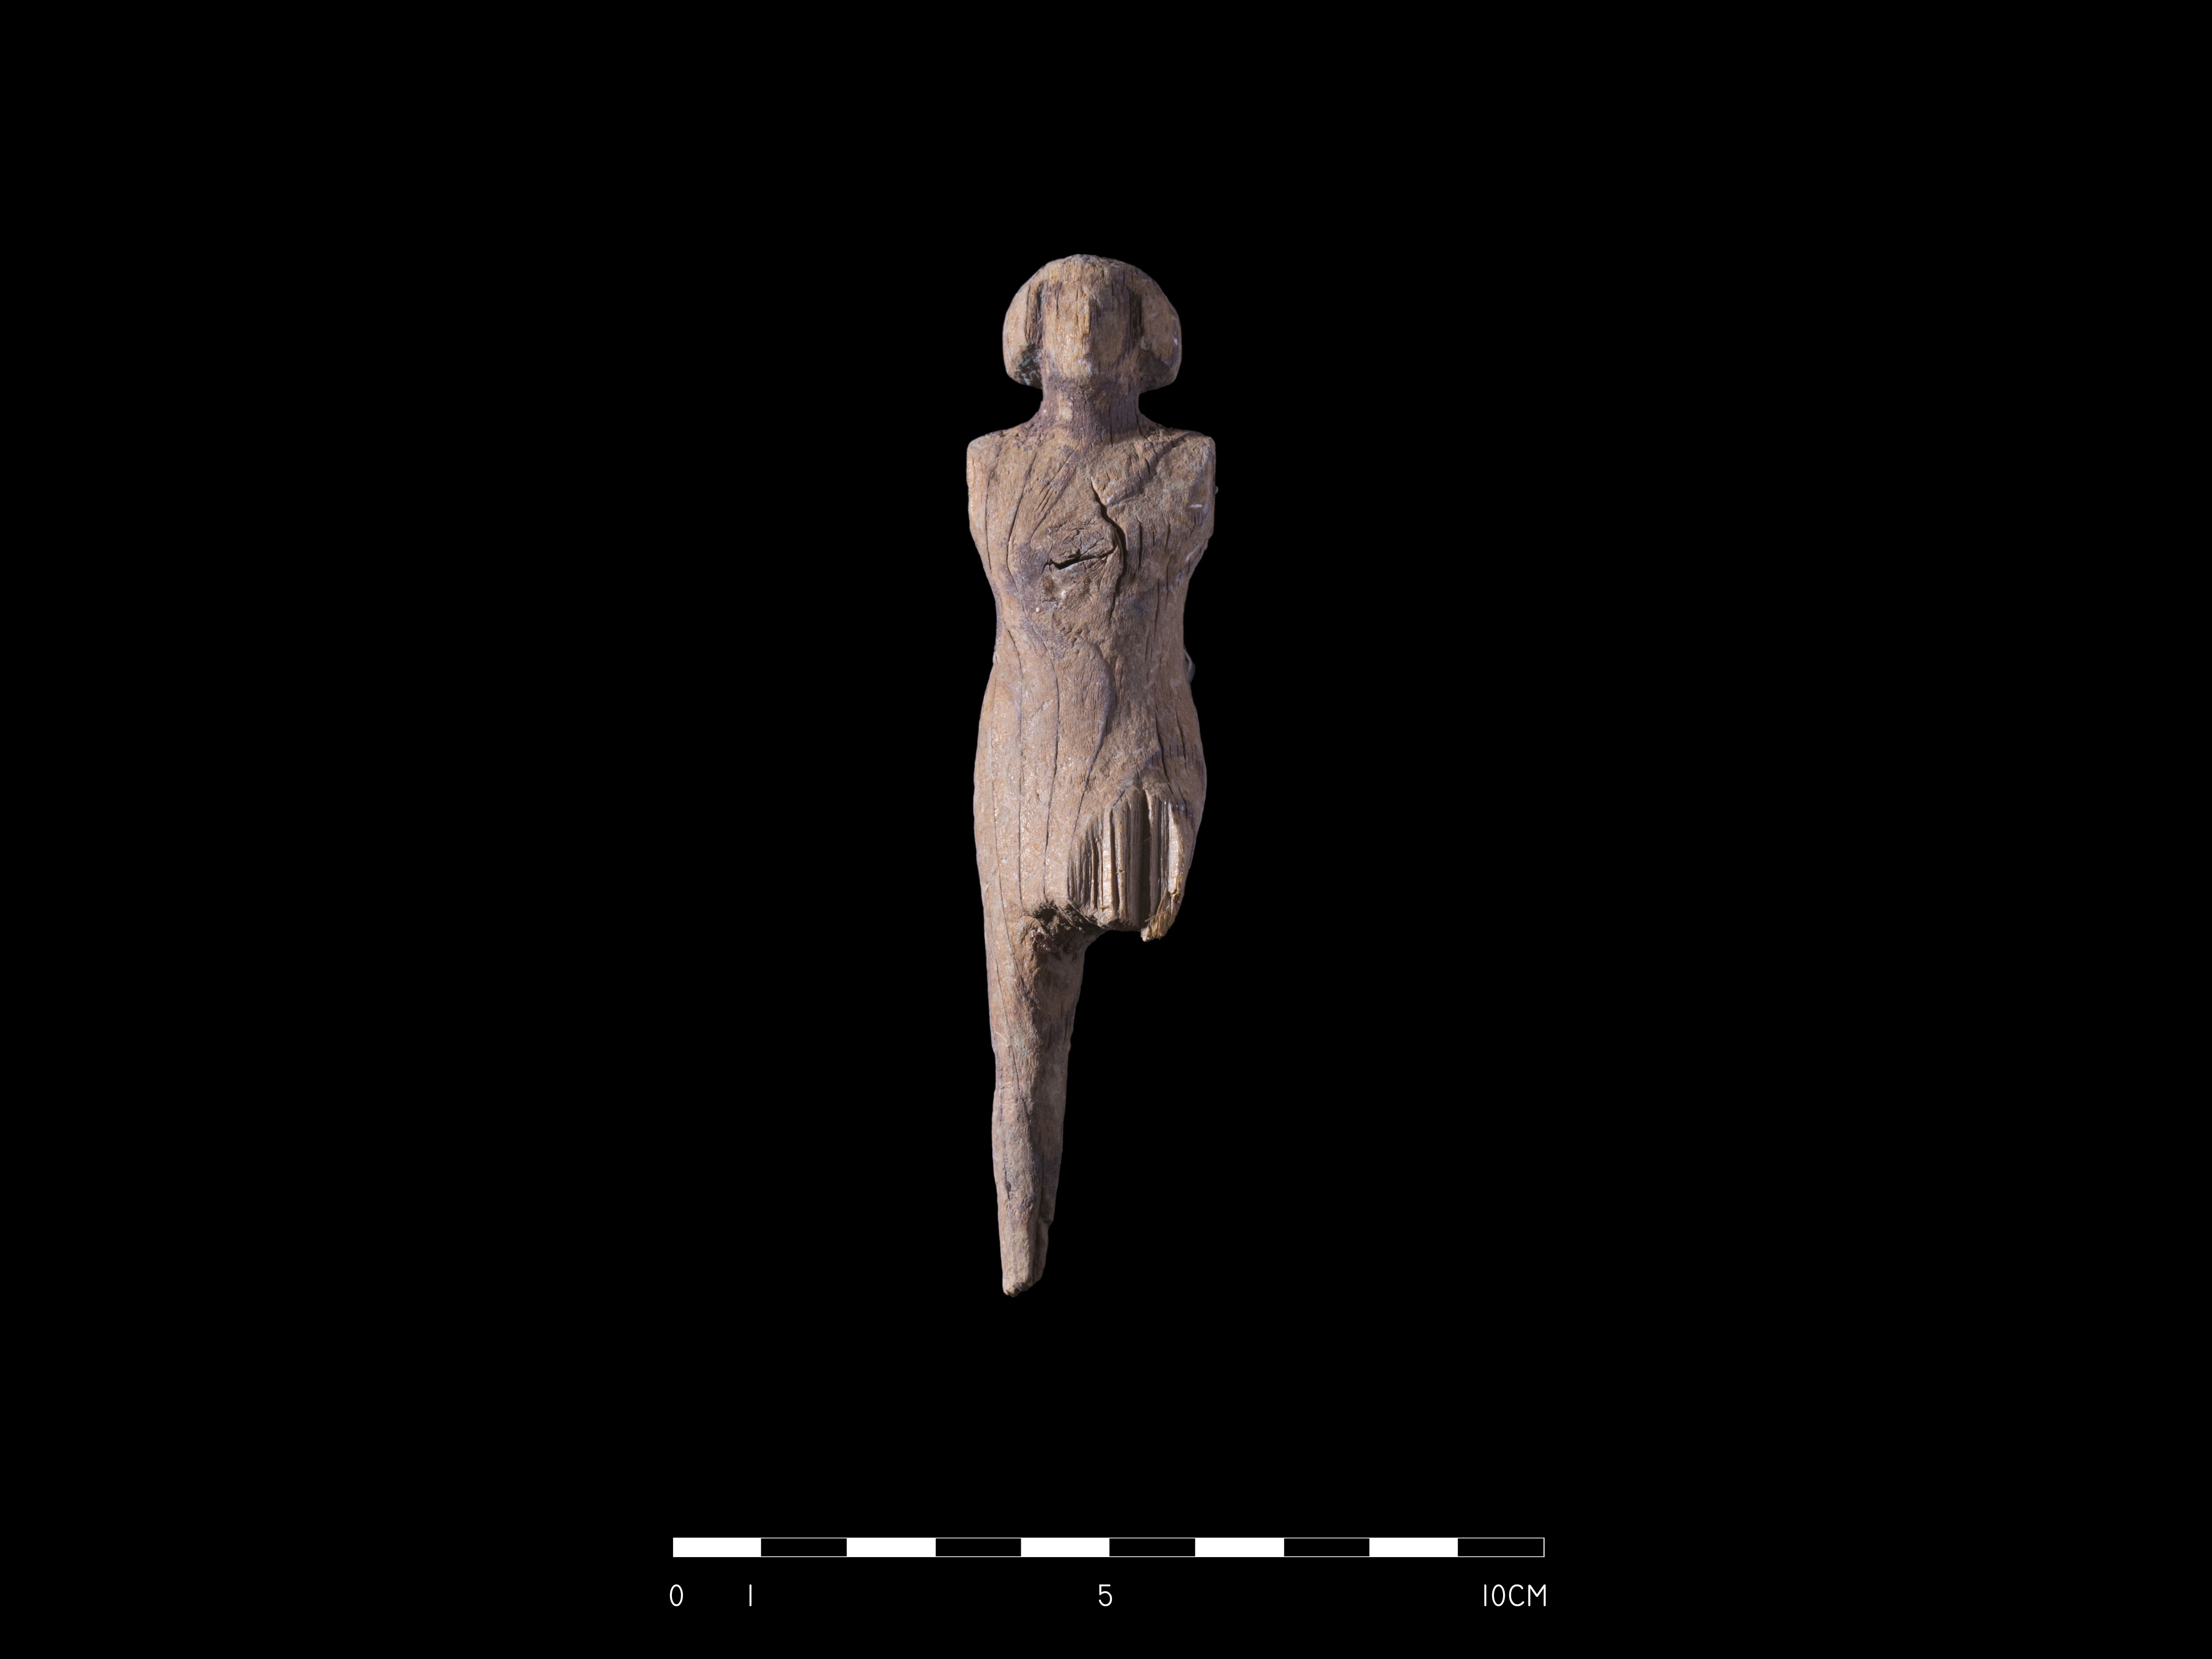 Estatueta com a forma de um homem encontrada pelos arqueólogos (Foto: M. Jawornicki)